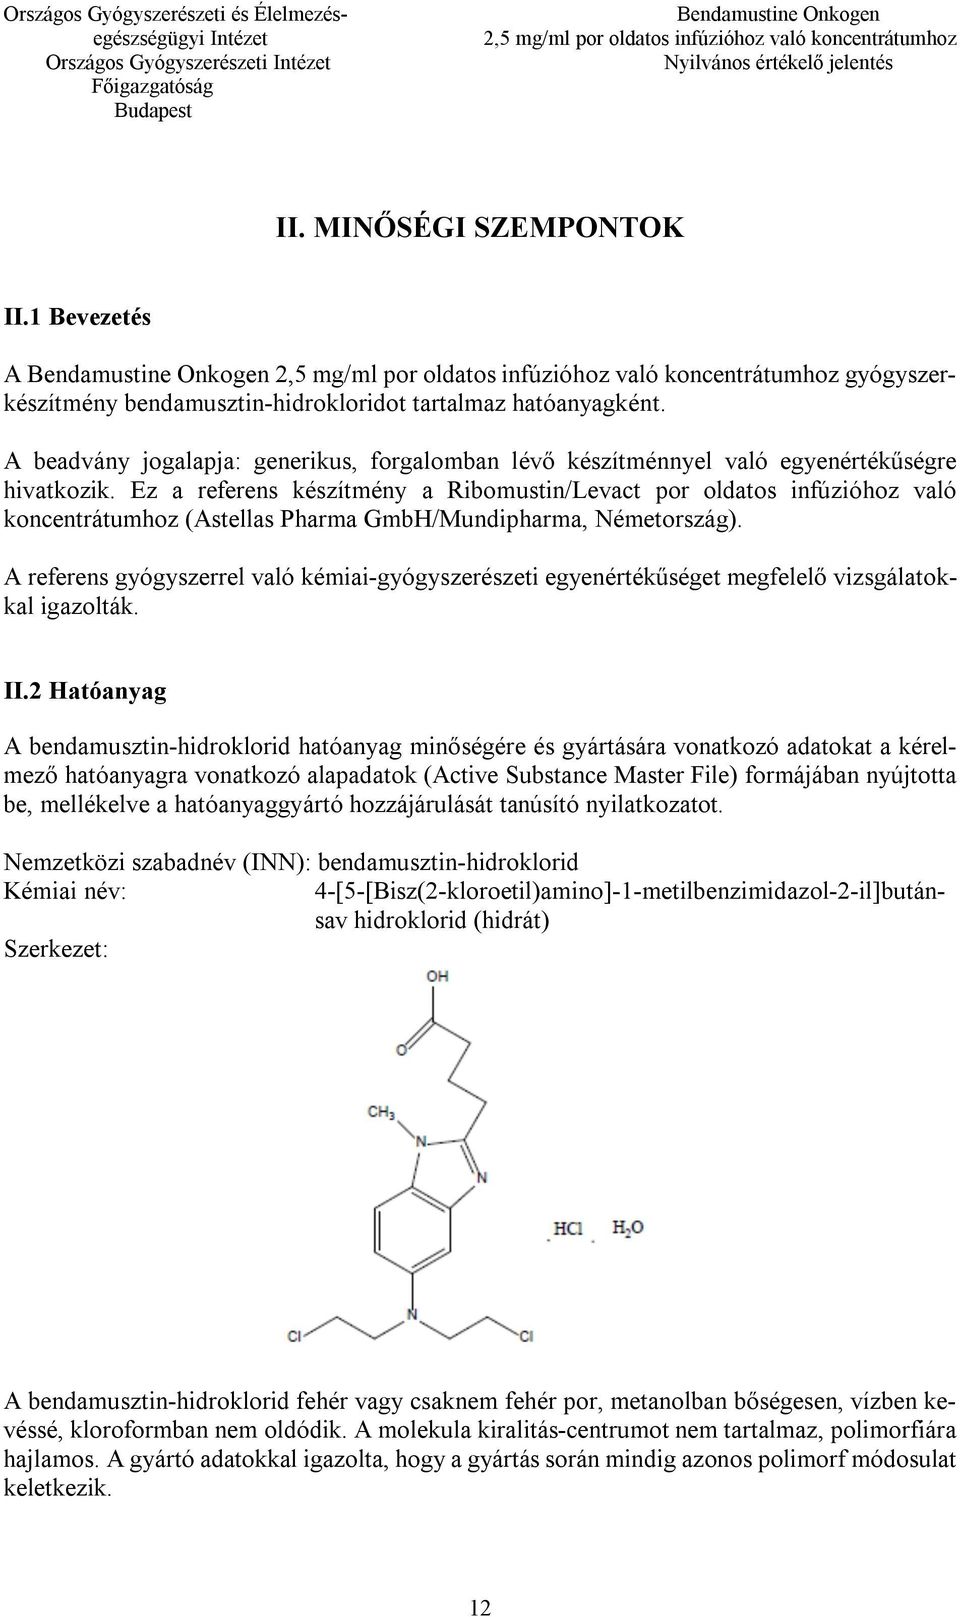 Ez a referens készítmény a Ribomustin/Levact por oldatos infúzióhoz való koncentrátumhoz (Astellas Pharma GmbH/Mundipharma, Németország).